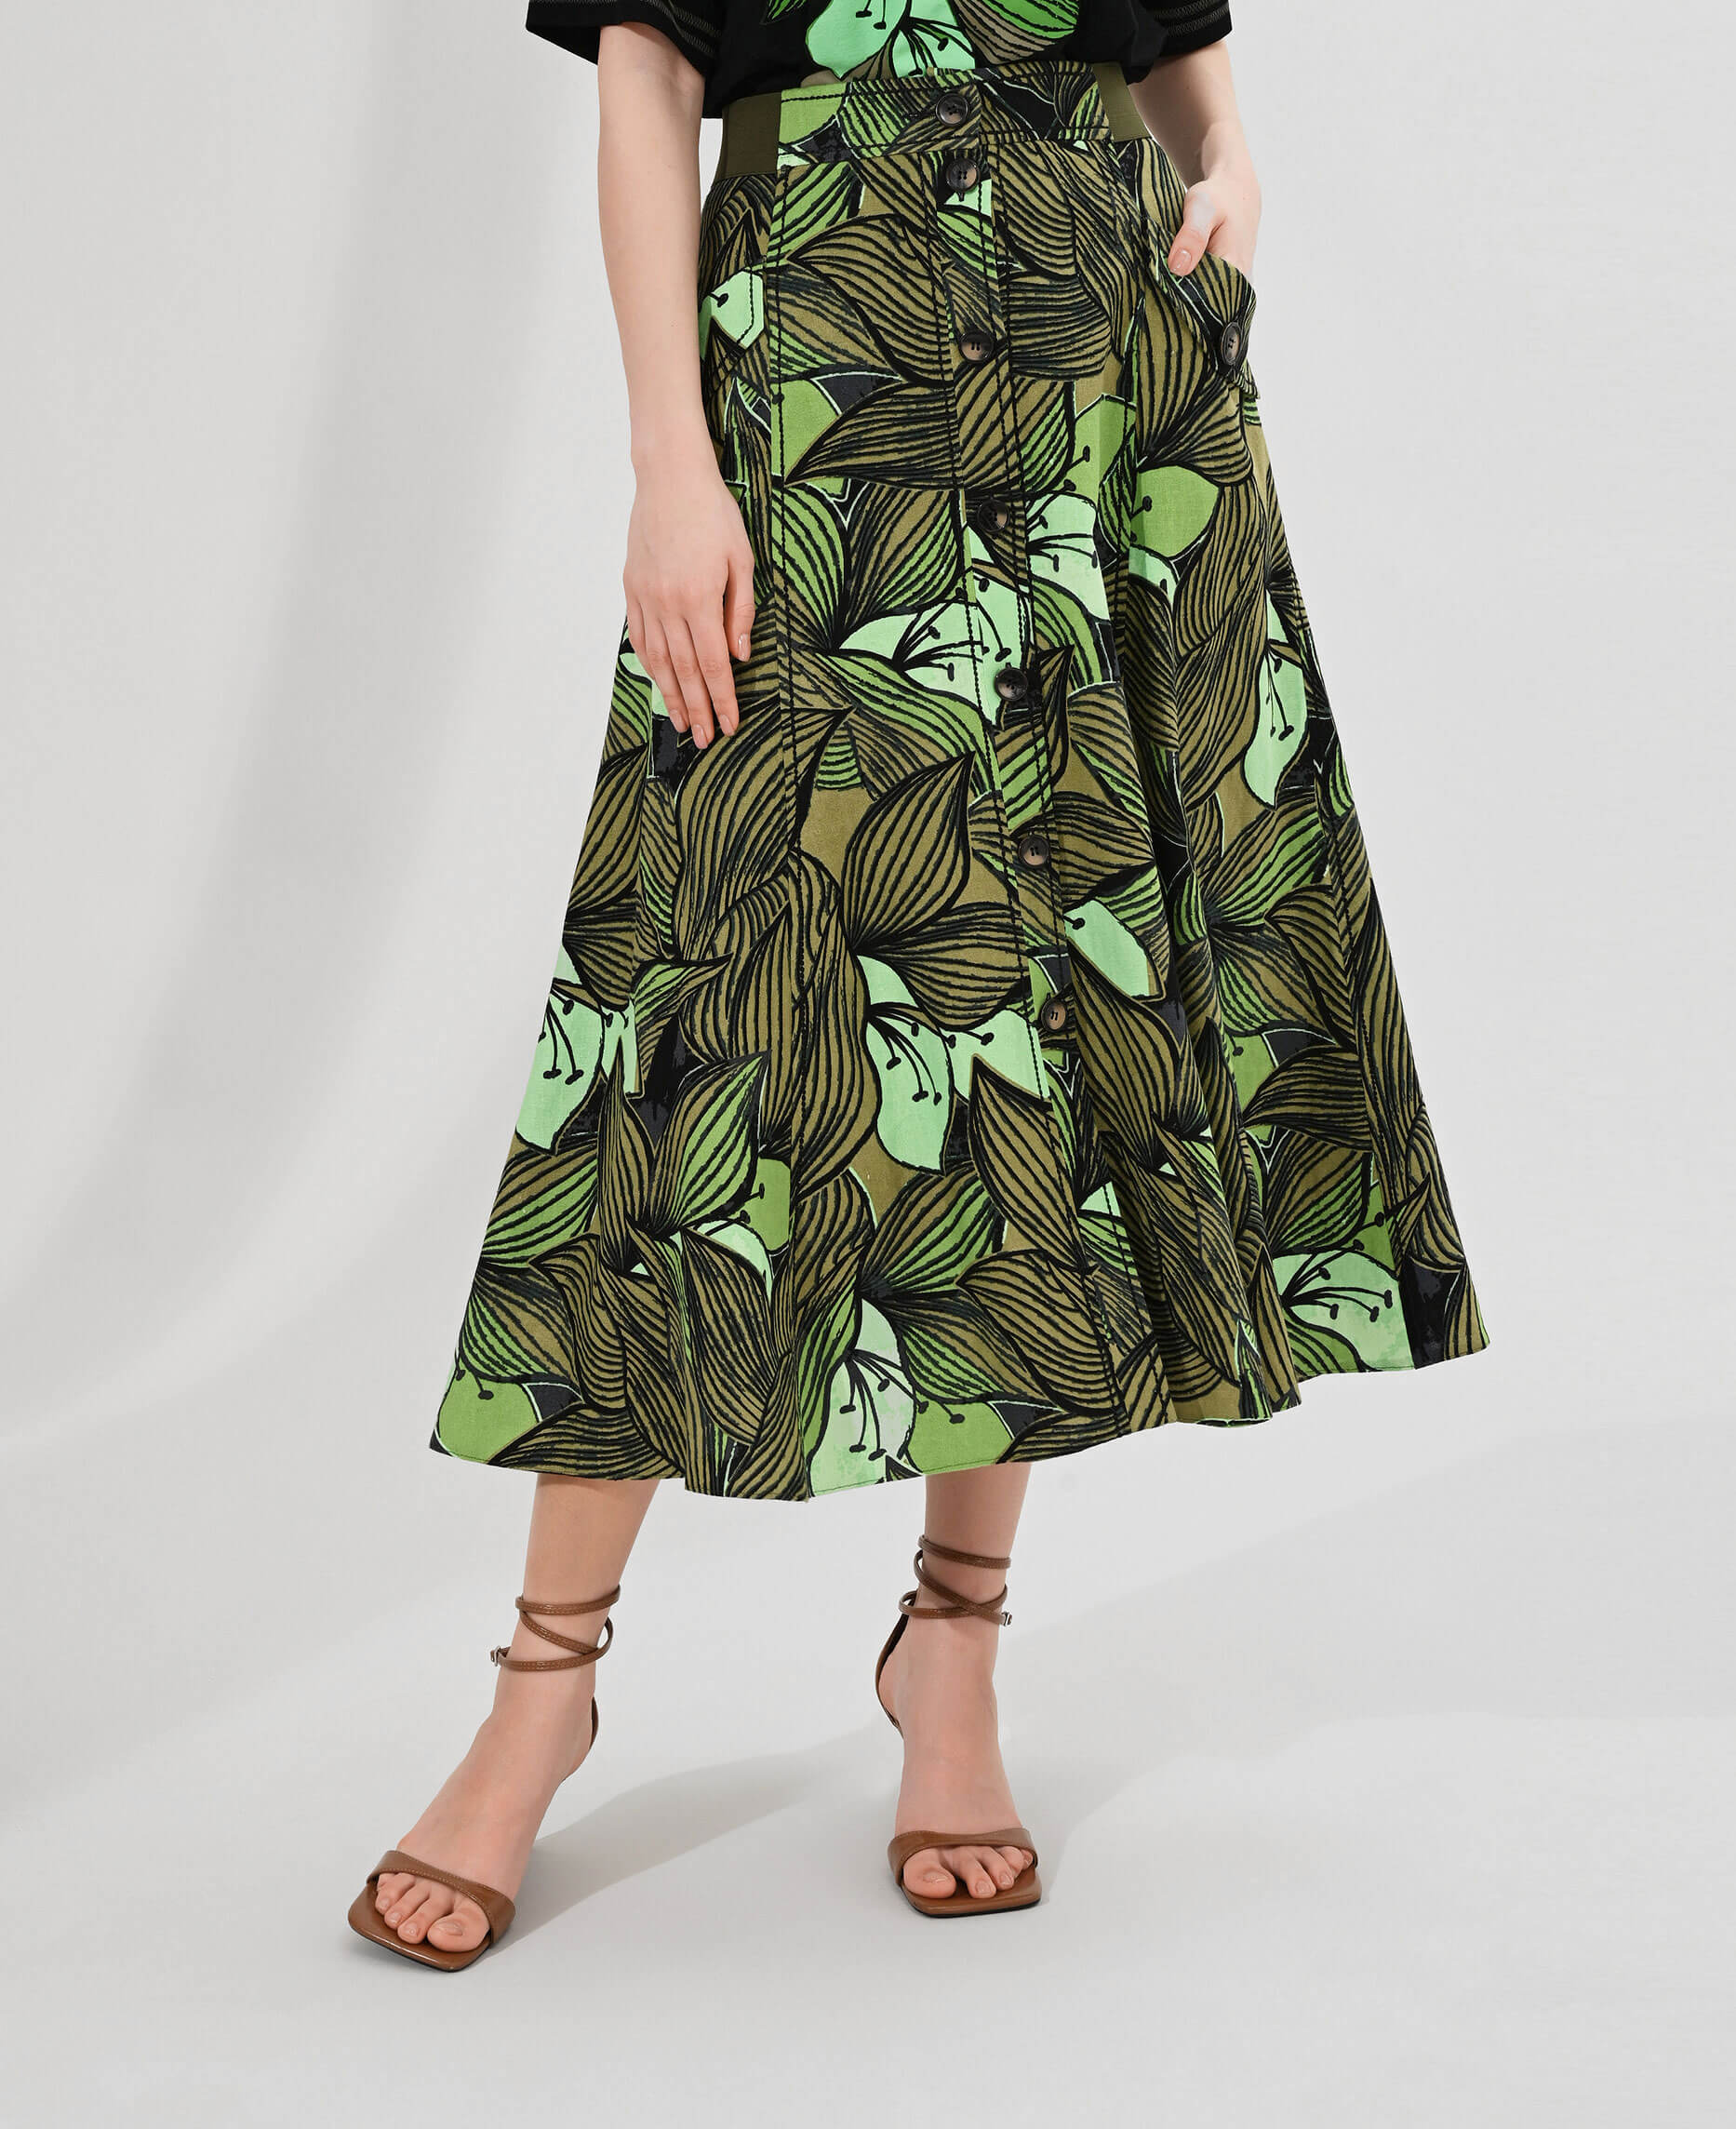 Легкая юбка с застежкой на пуговицы Цвет Зеленый